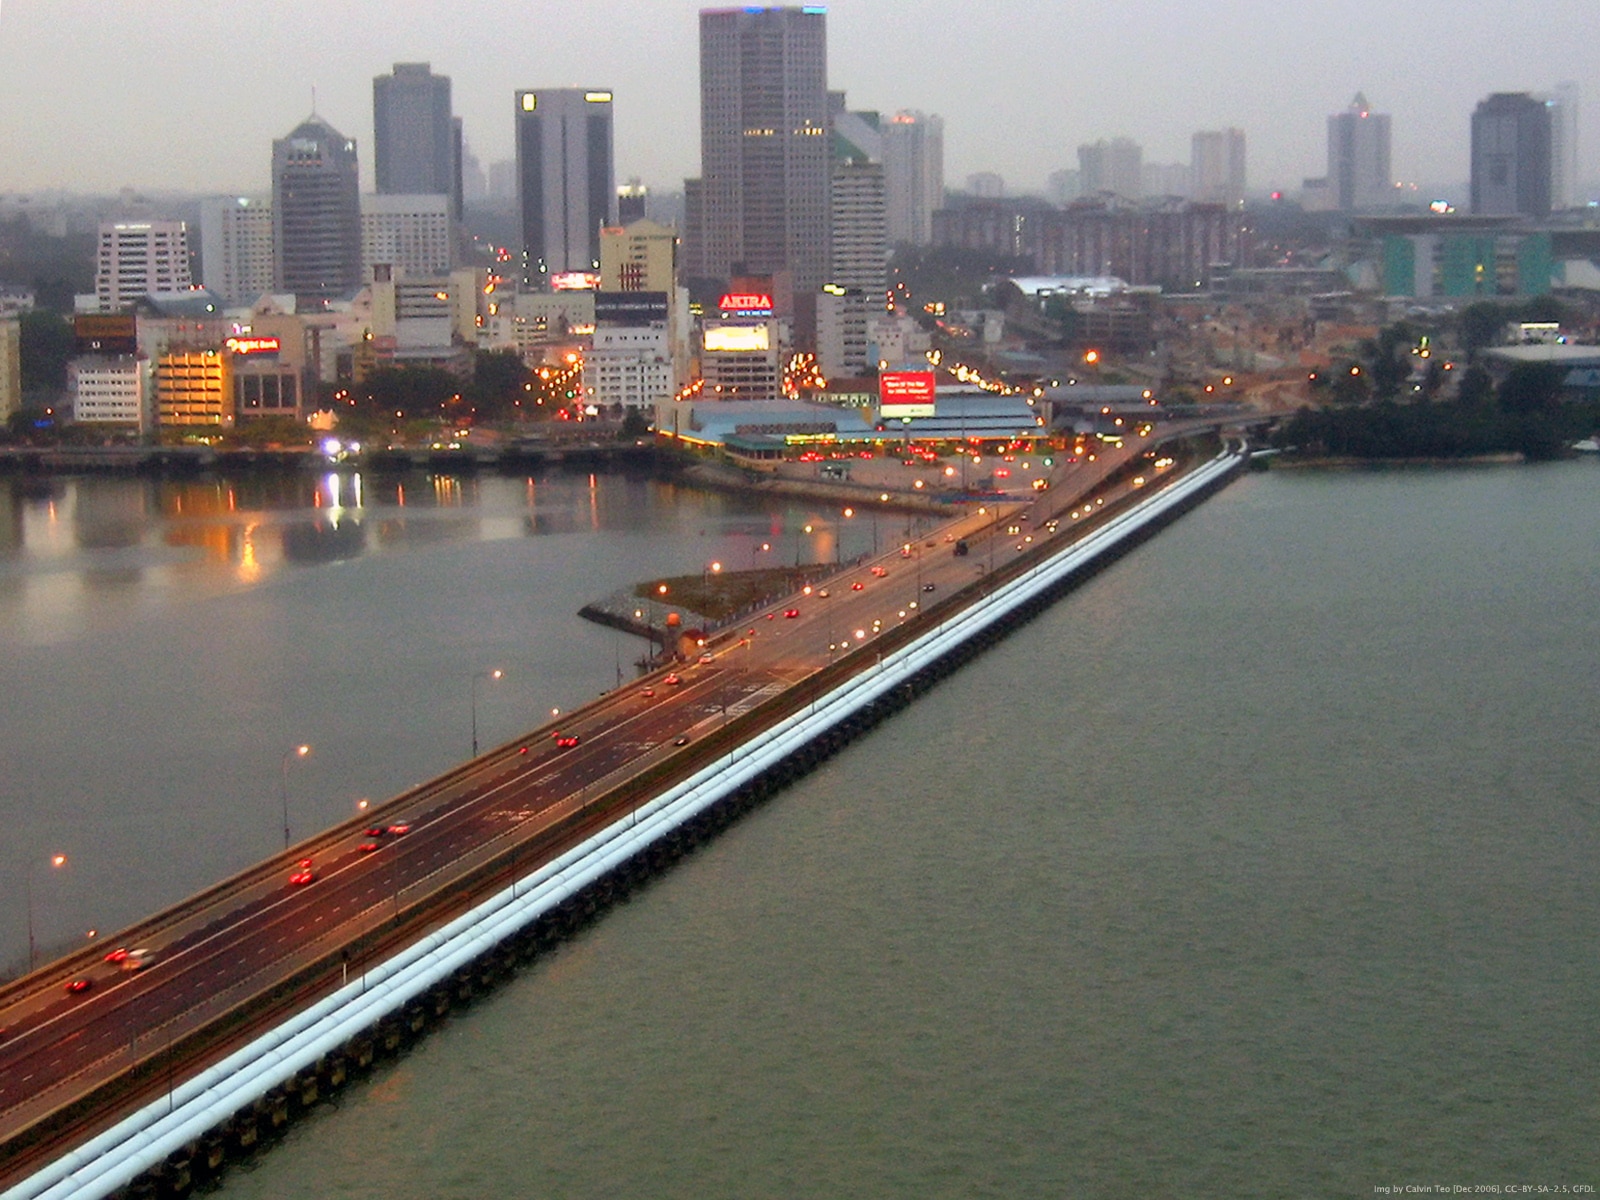 Johor-Singapore Causeway